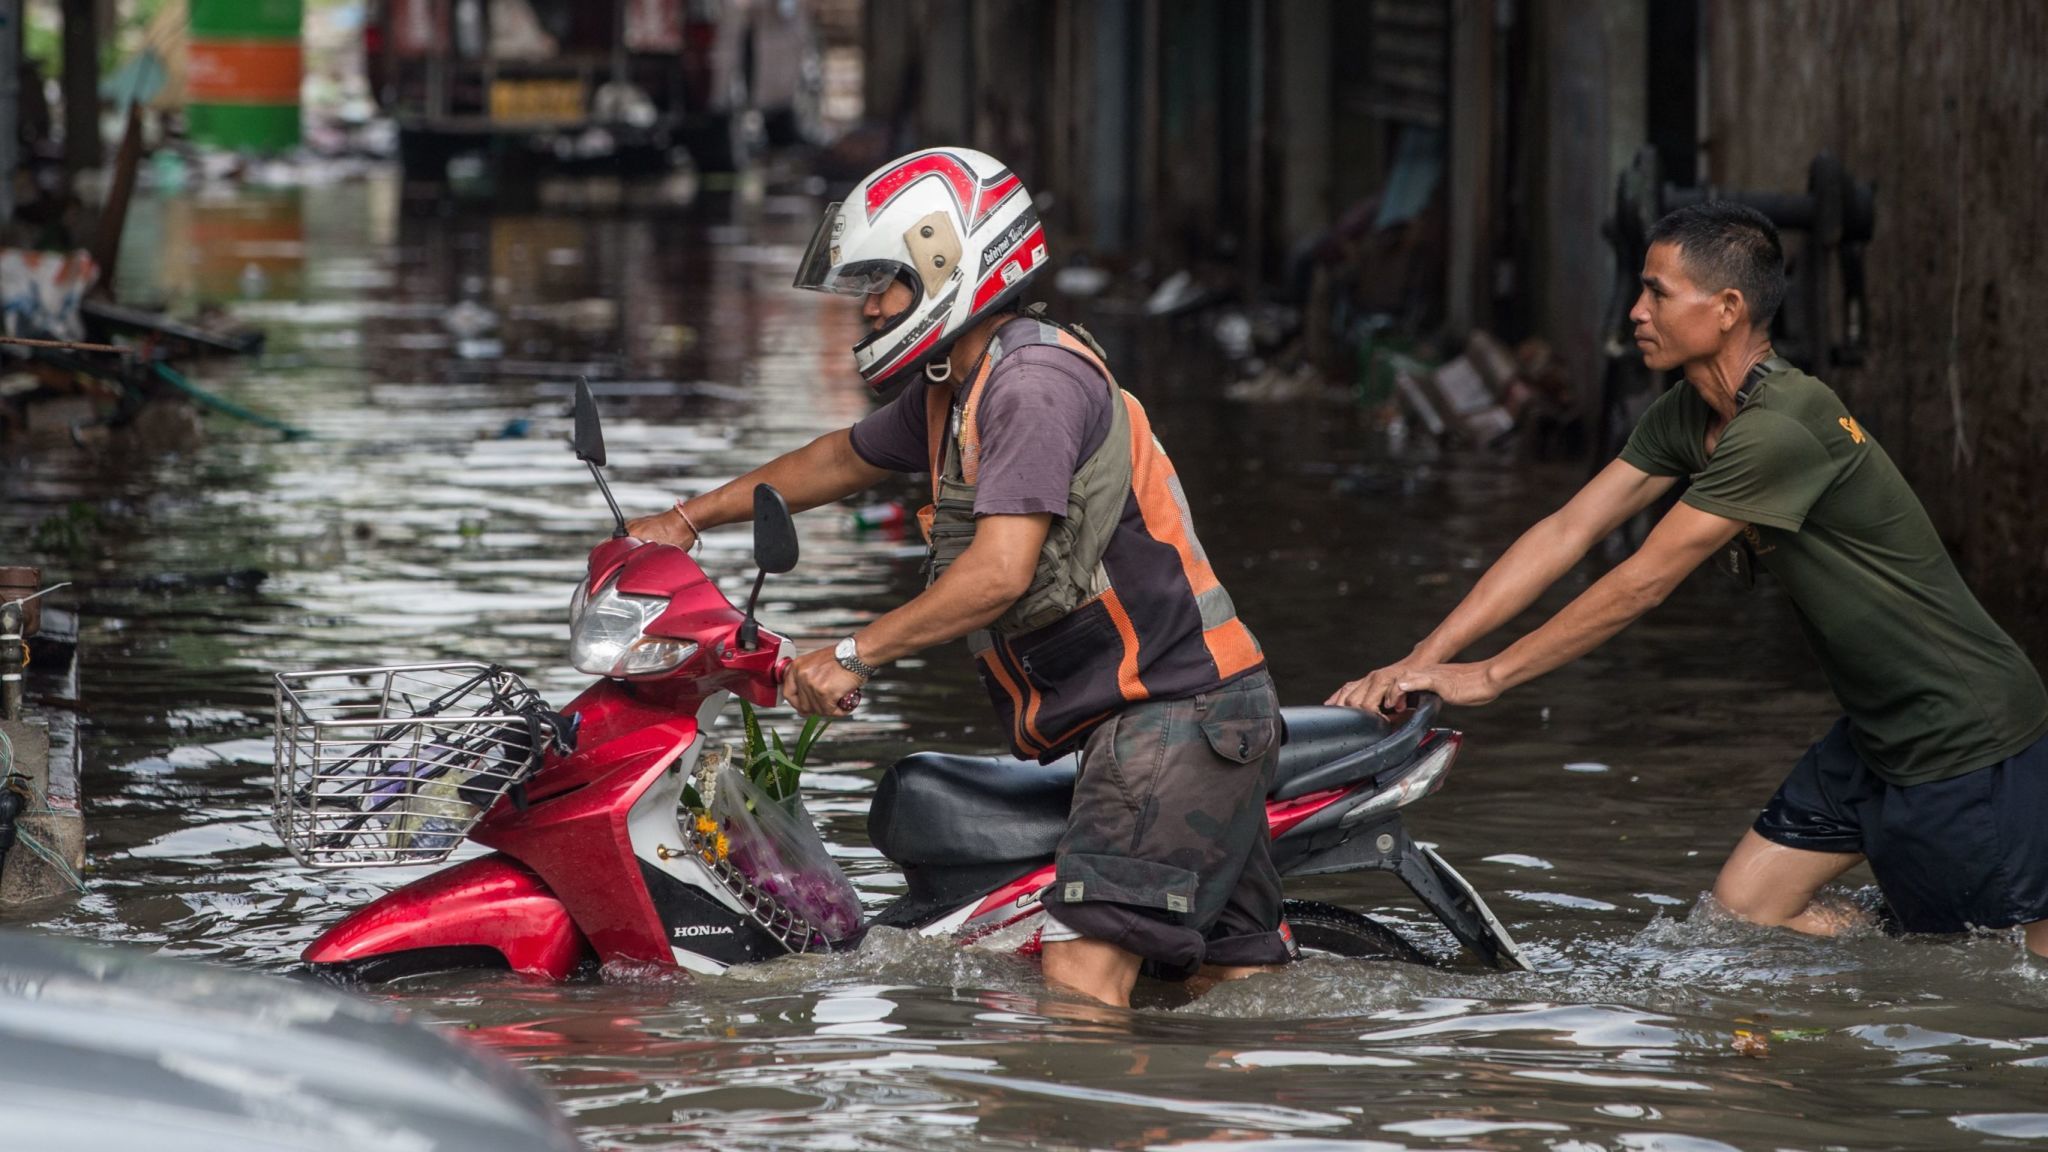 Бангкок осадки. Трансмиграция в Индонезии. Be Flooded with — переполненный. Картина-наводнение в Джакарте. Merida City Flood.